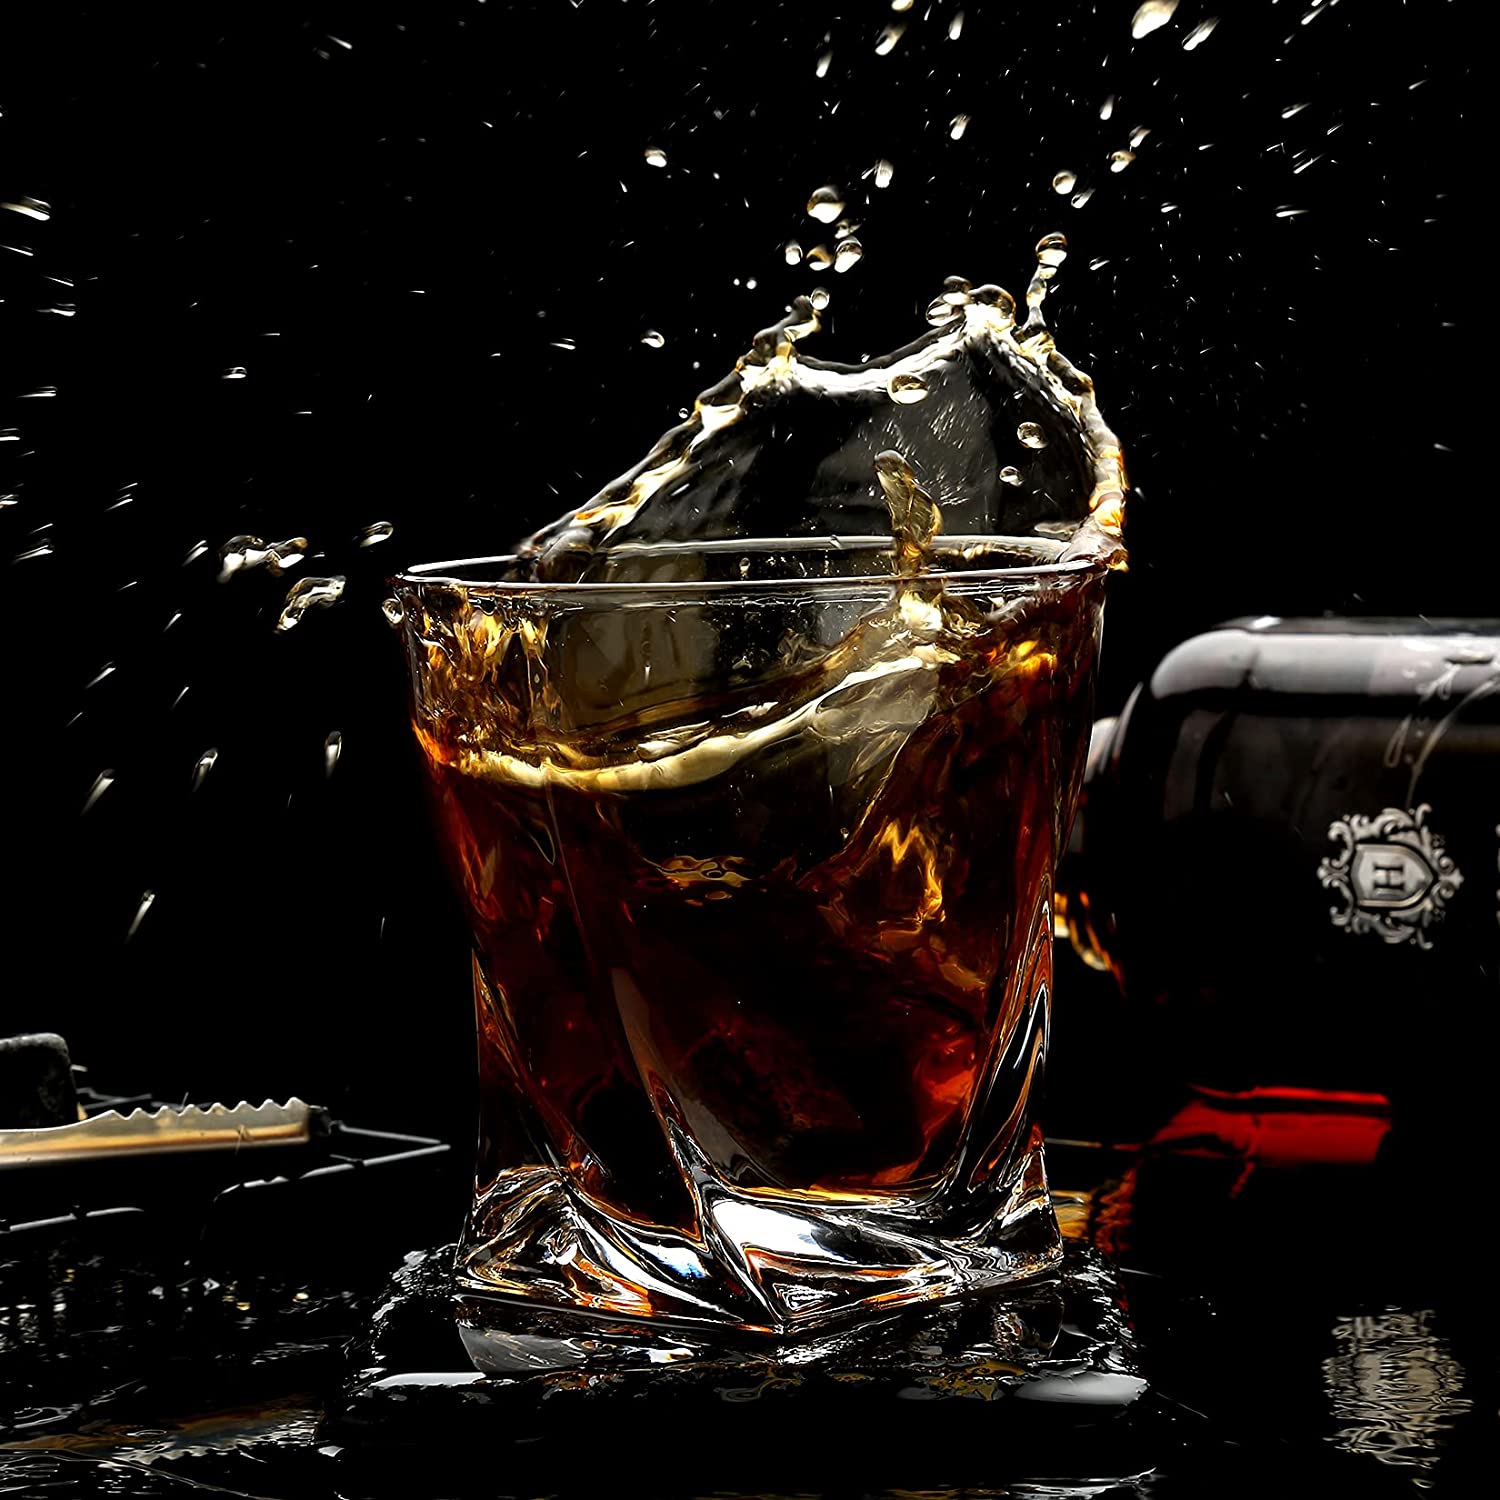 Coffret Verre Whisky "Classique" - Le Coin Du Barman : Le Spécialiste Des Accessoires Pour Cocktails